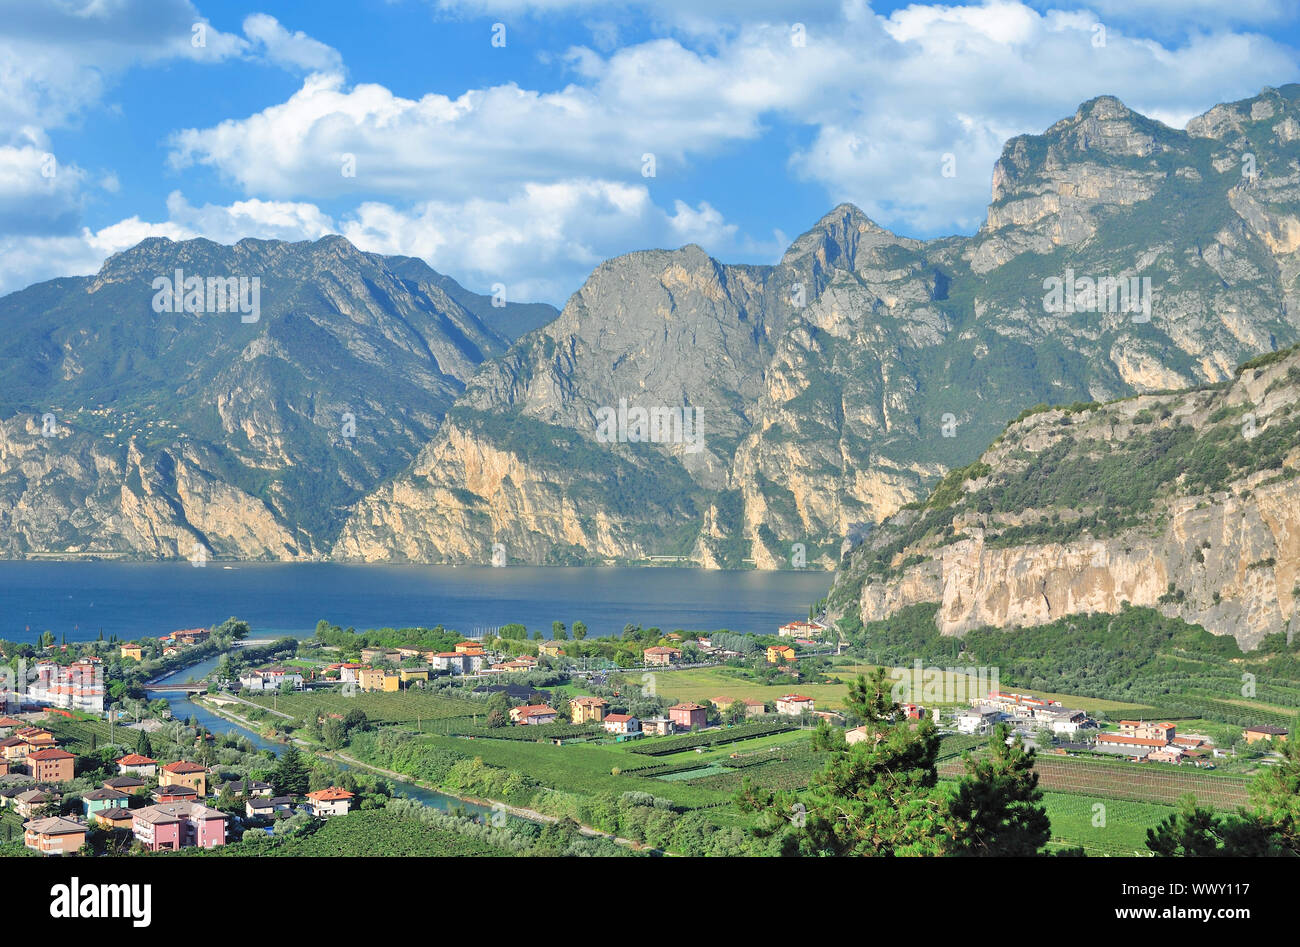 Villaggio di Nago-Torbole in riva al lago di Garda, Trentino, Italia Foto Stock